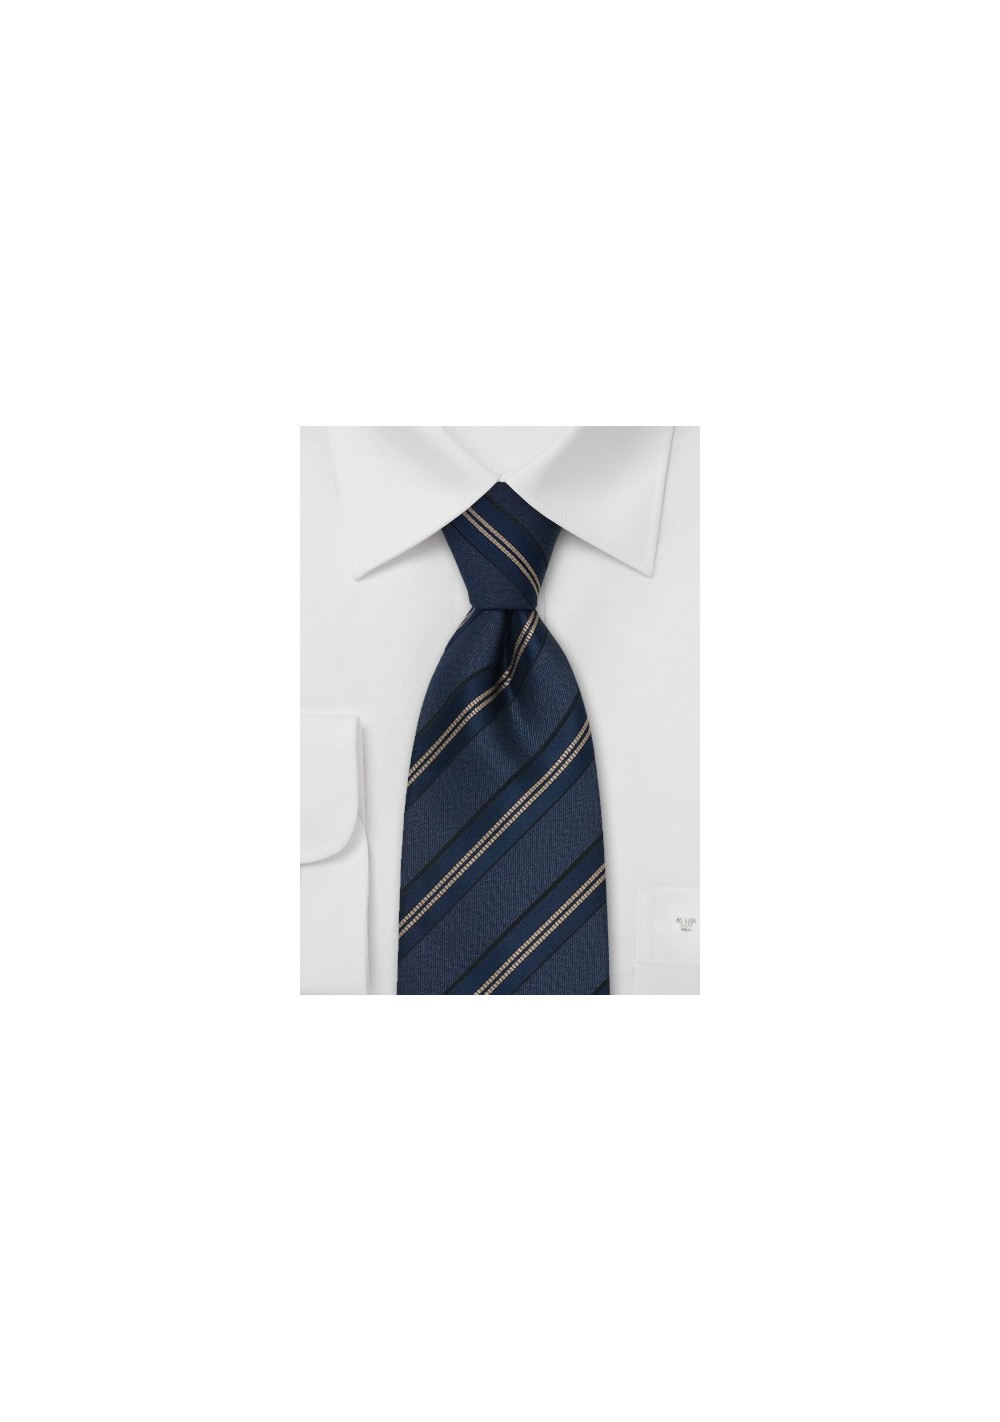 Chevalier Necktie - Blue & Bronze Striped Tie by Designer Chevalier